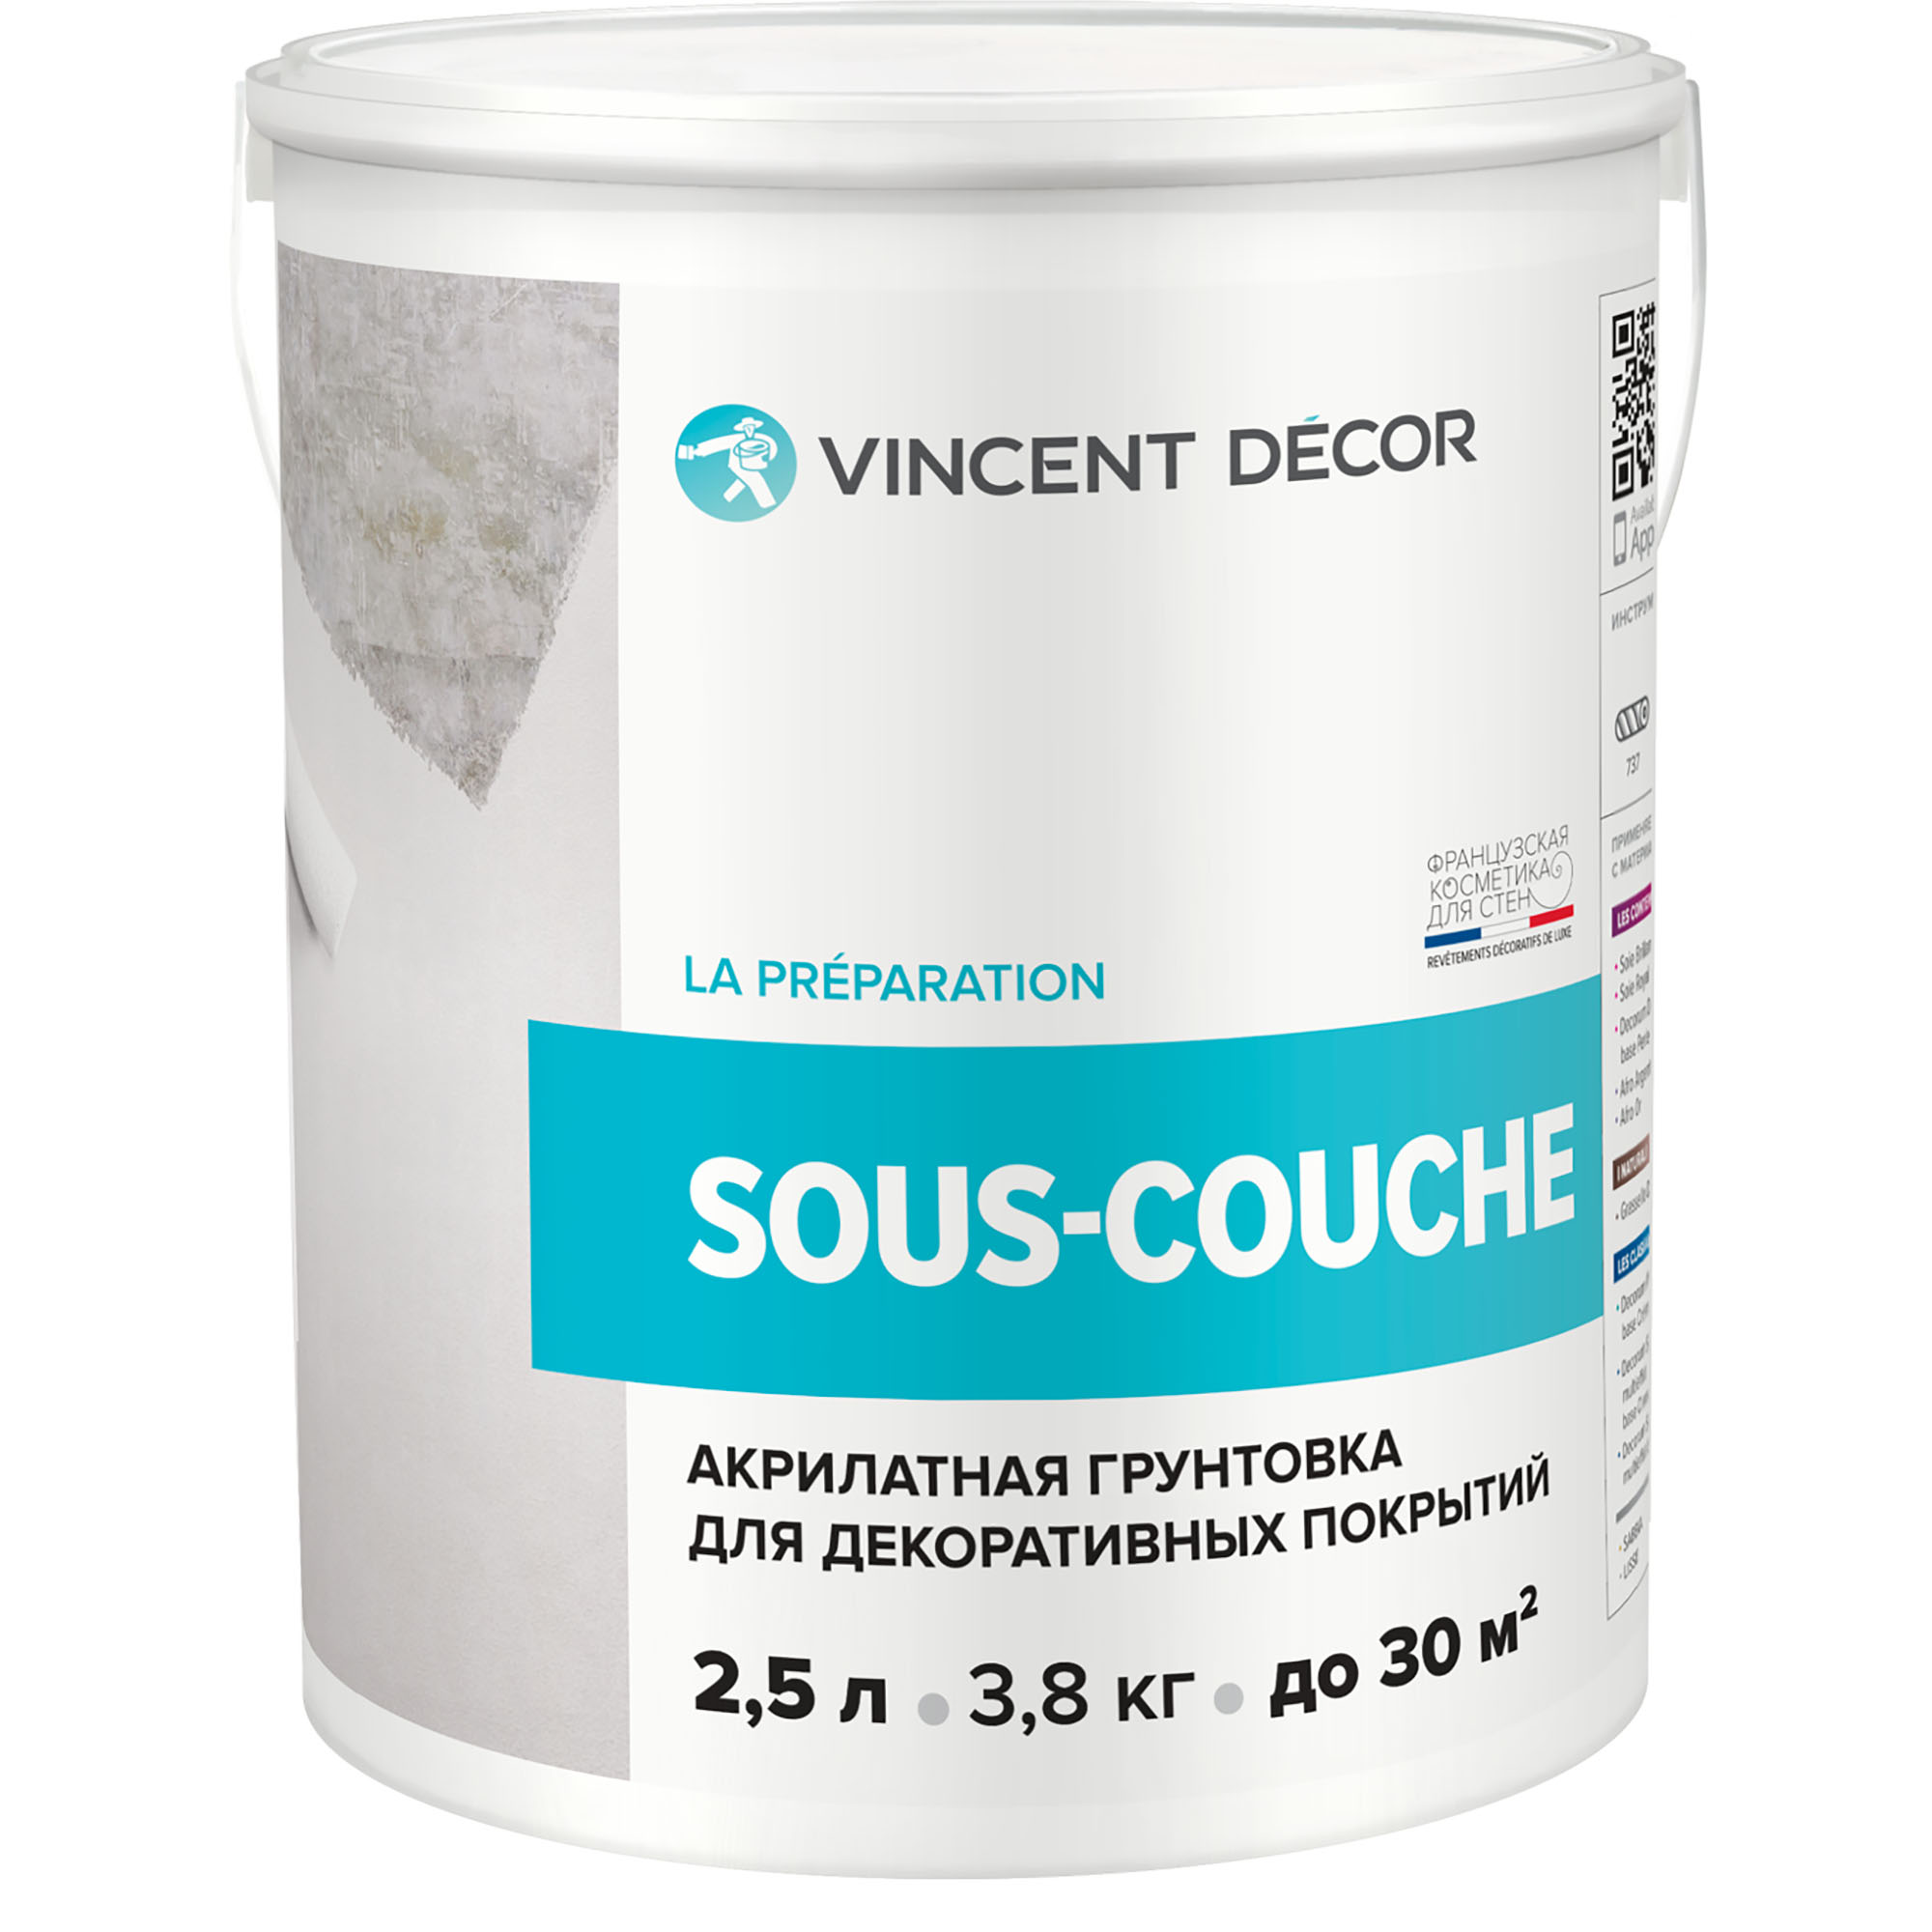 Грунтовка для декоративных покрытий Vincent Decor Sous-Couсhe 2,5 л грунтовка для защиты древесины vincent